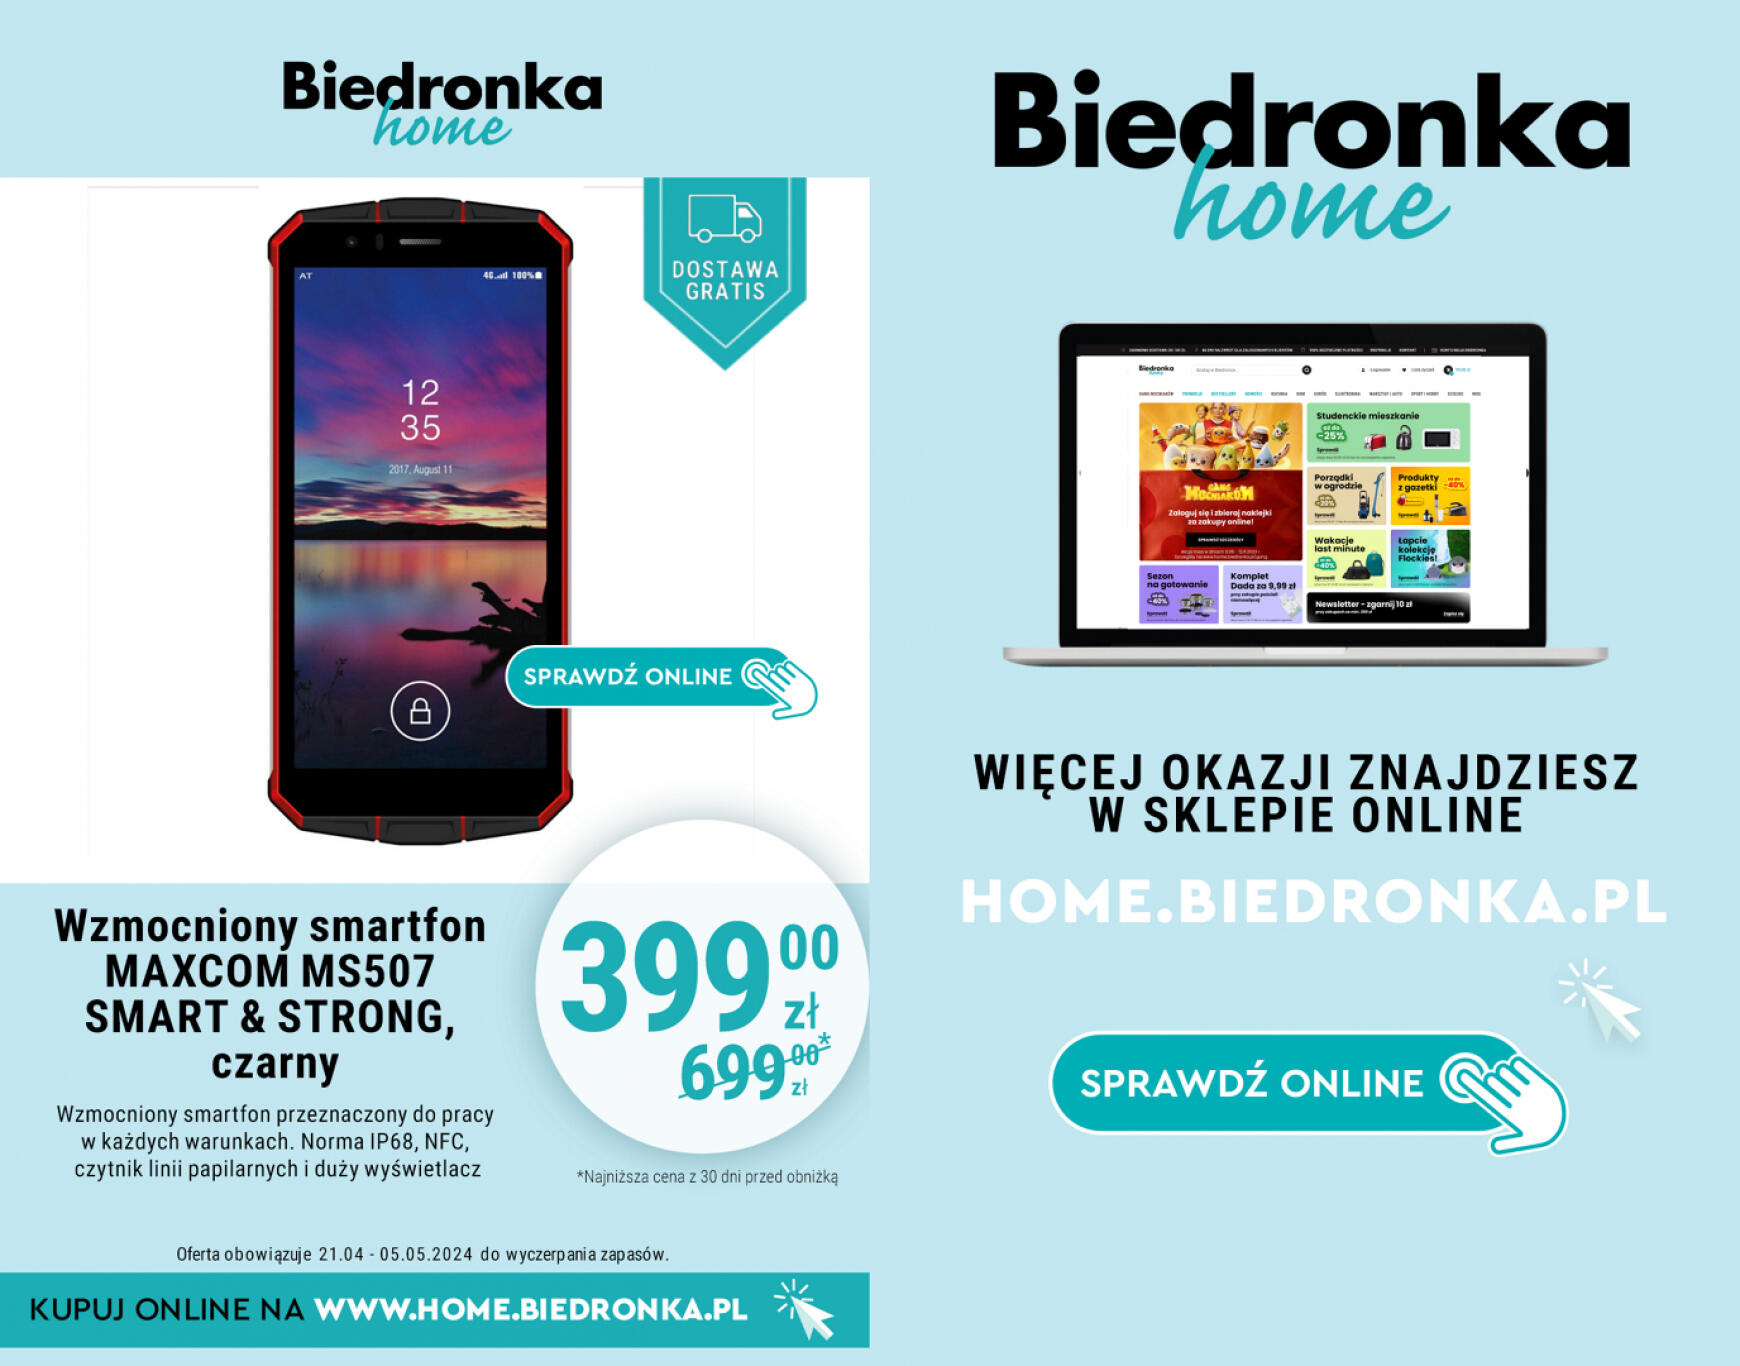 biedronka - Biedronka Home gazetka aktualna ważna od 21.04. - 05.05. - page: 7